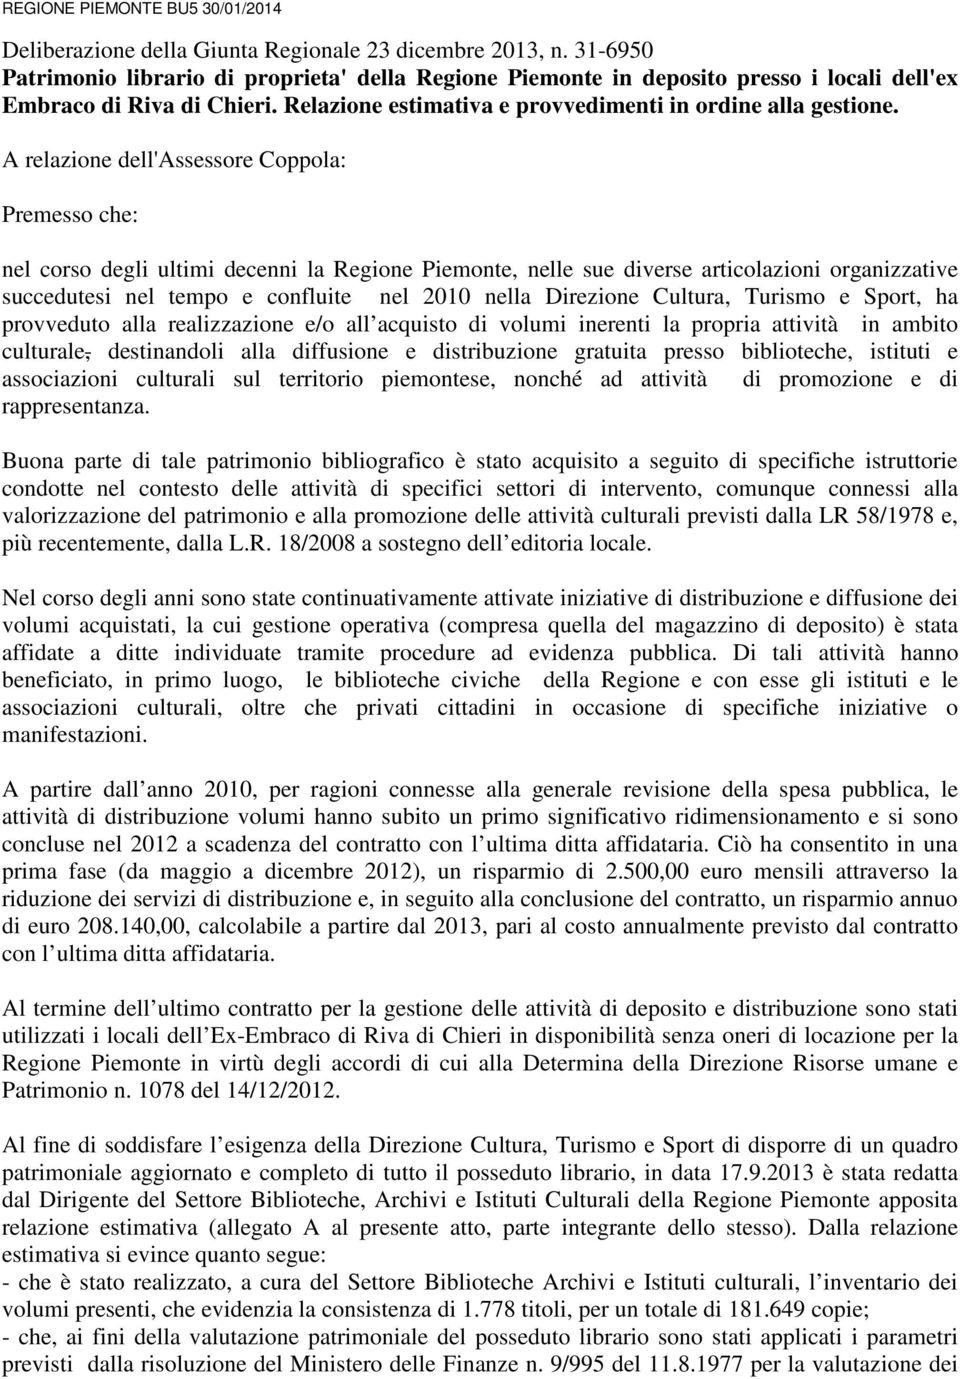 A relazione dell'assessore Coppola: Premesso che: nel corso degli ultimi decenni la Regione Piemonte, nelle sue diverse articolazioni organizzative succedutesi nel tempo e confluite nel 2010 nella